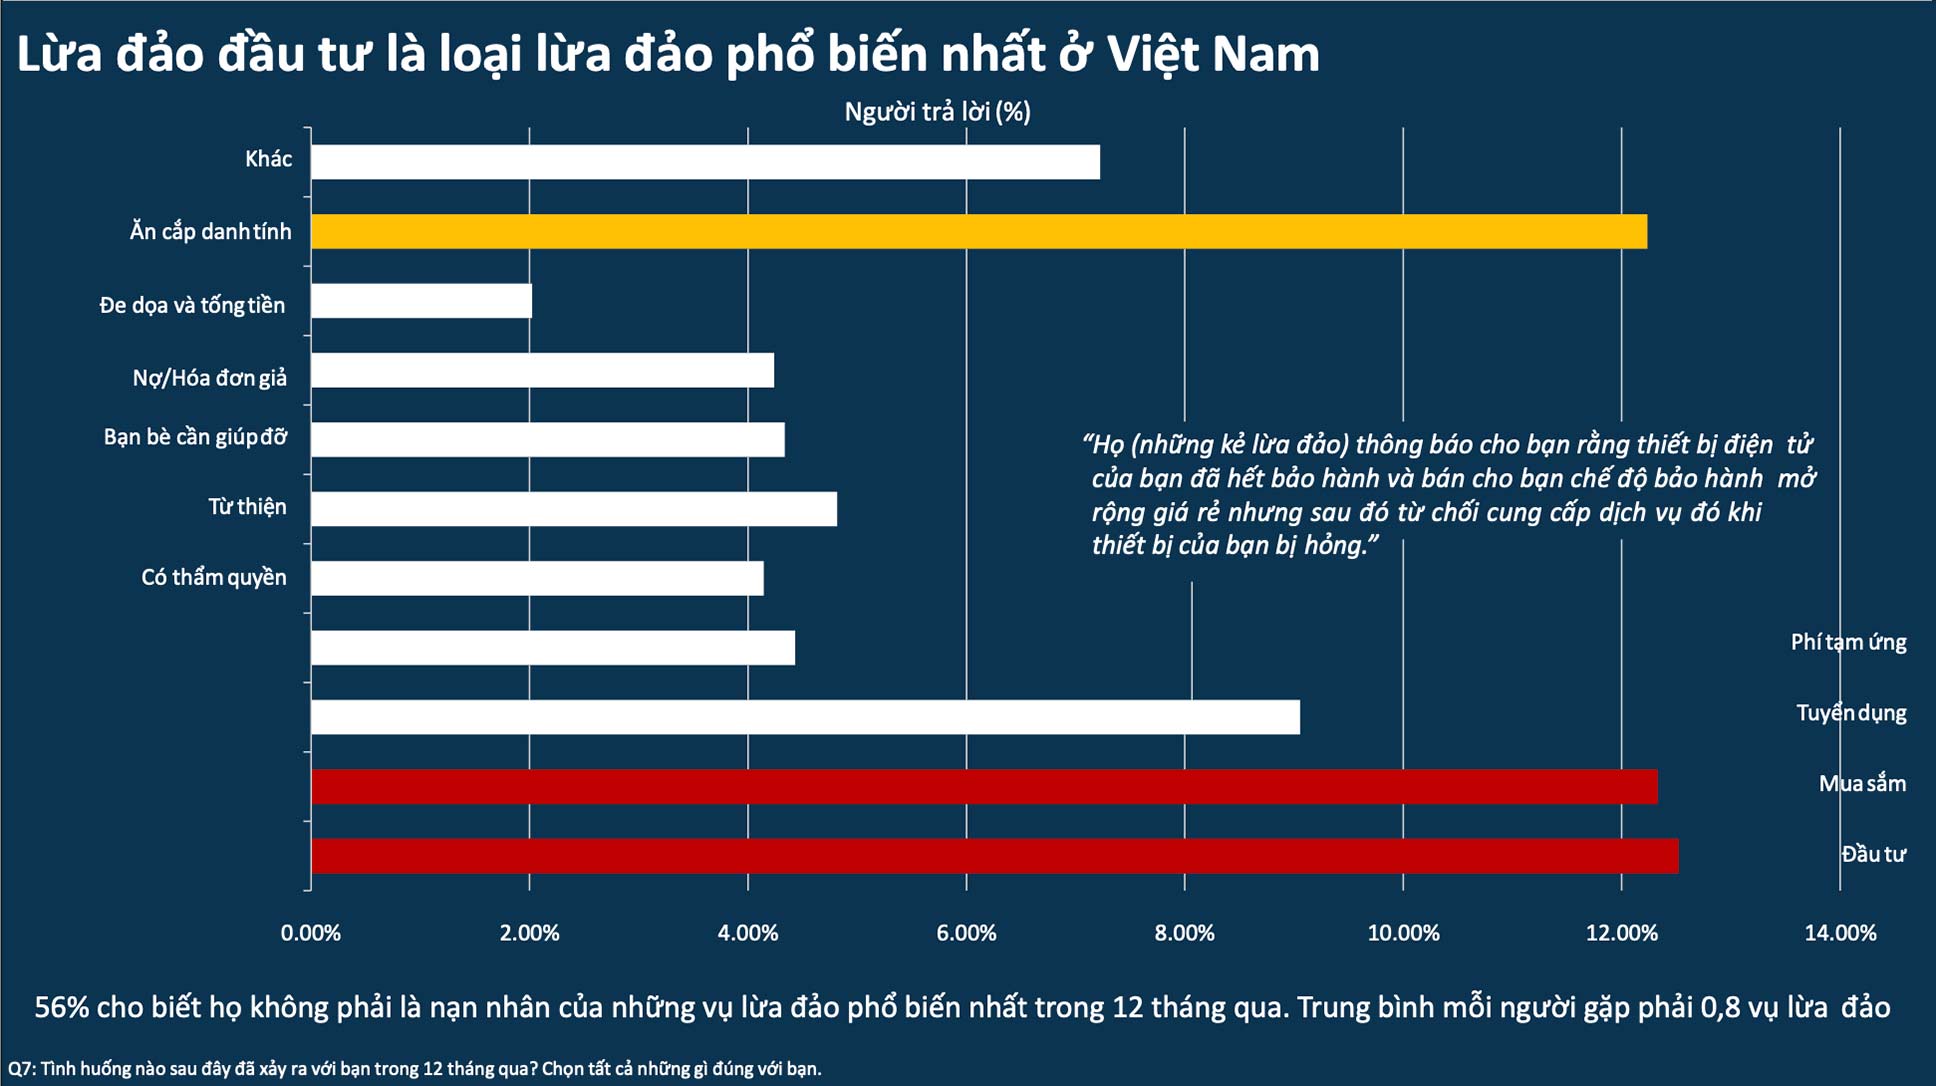 Lừa đảo đầu tư là loại lừa đảo phổ biến nhất ở Việt Nam.